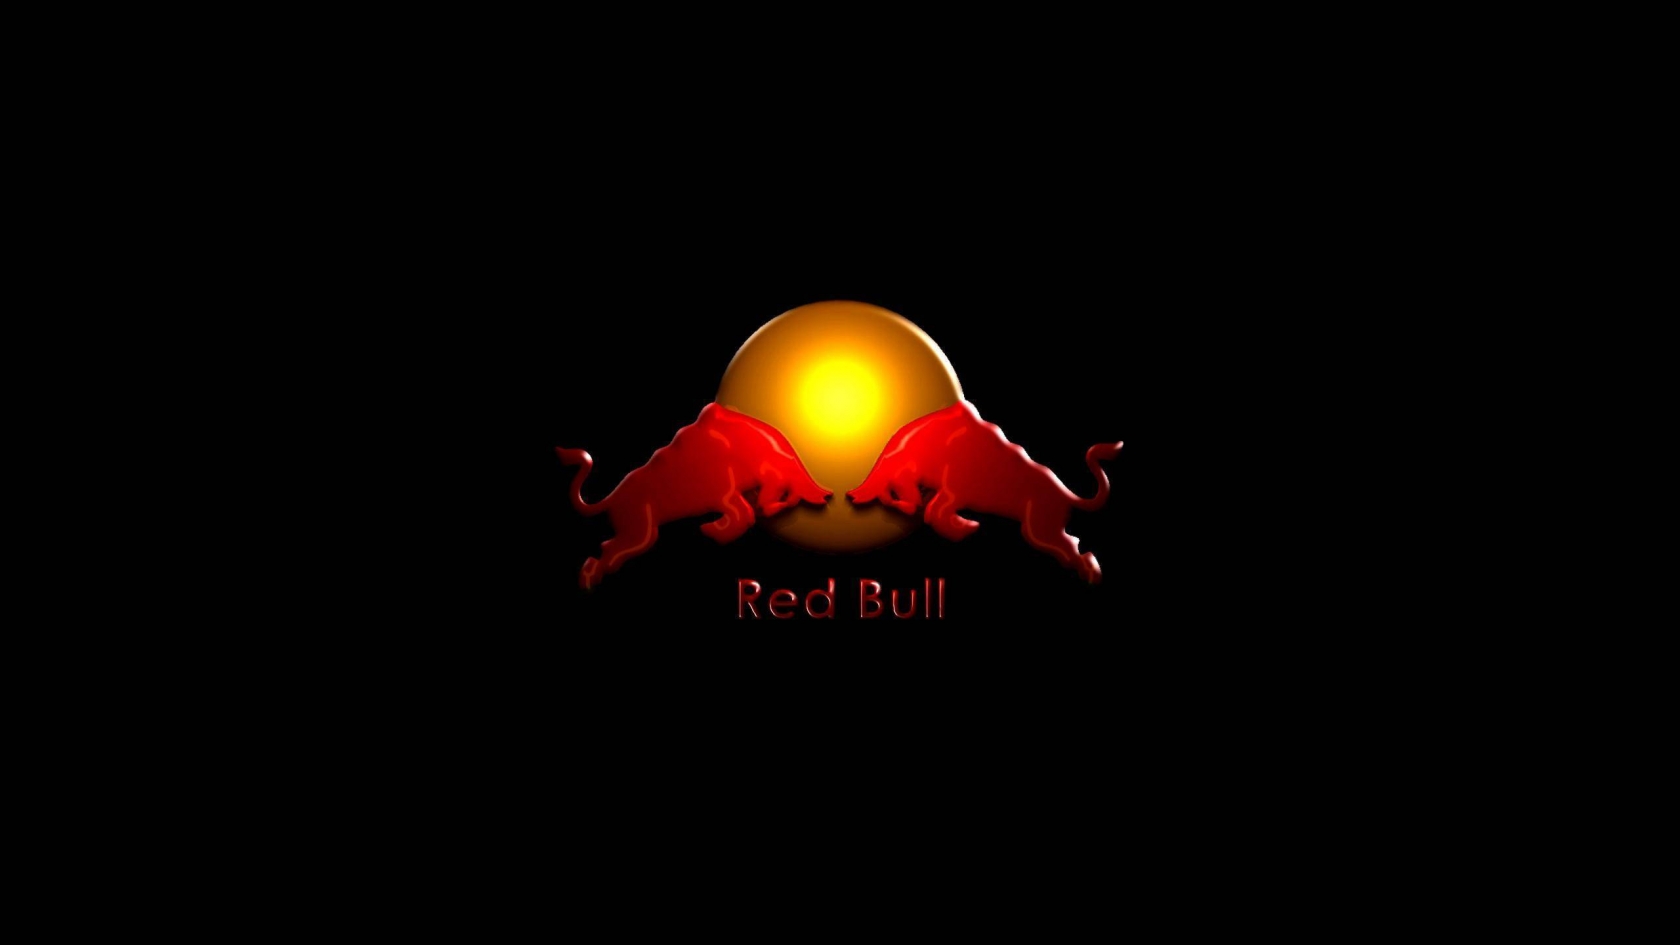 Red Bull for 1680 x 945 HDTV resolution